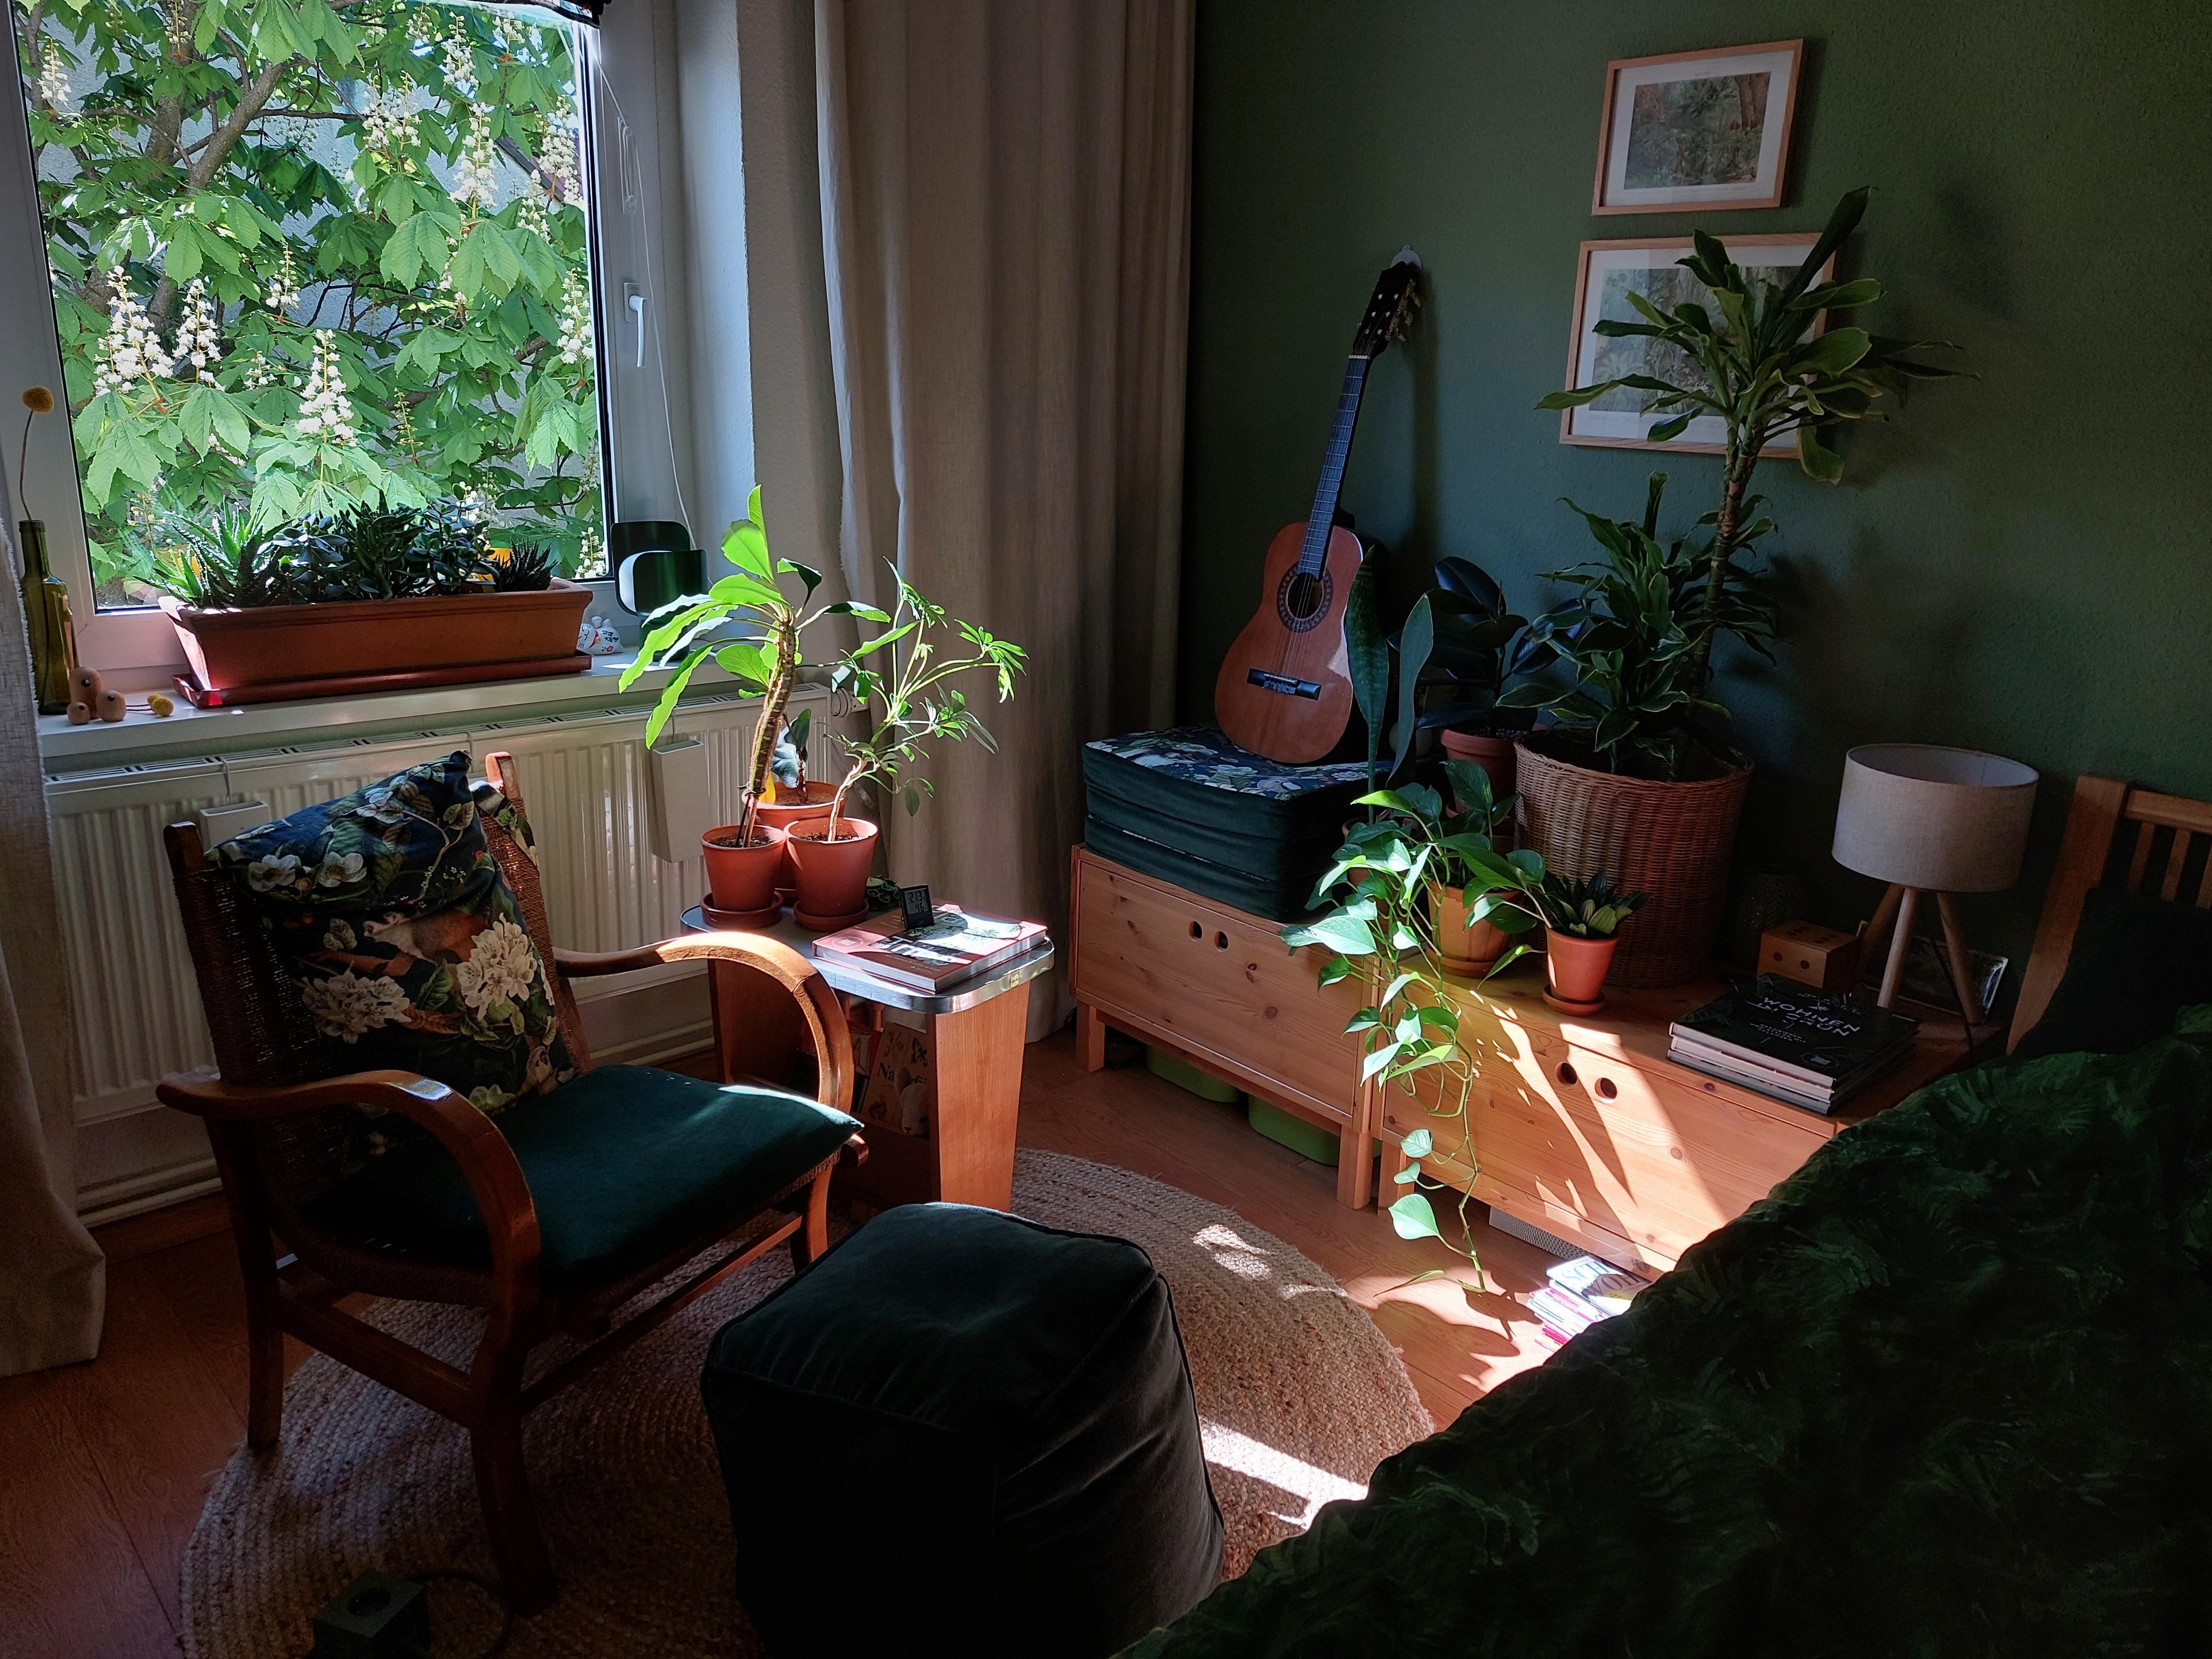 Sonne im Schlafzimmer :)
#grüneWand #Vintage #Sonne #Pflanzen #Leinenvorhänge #DIY-Kissen #Leuchte #Pouf